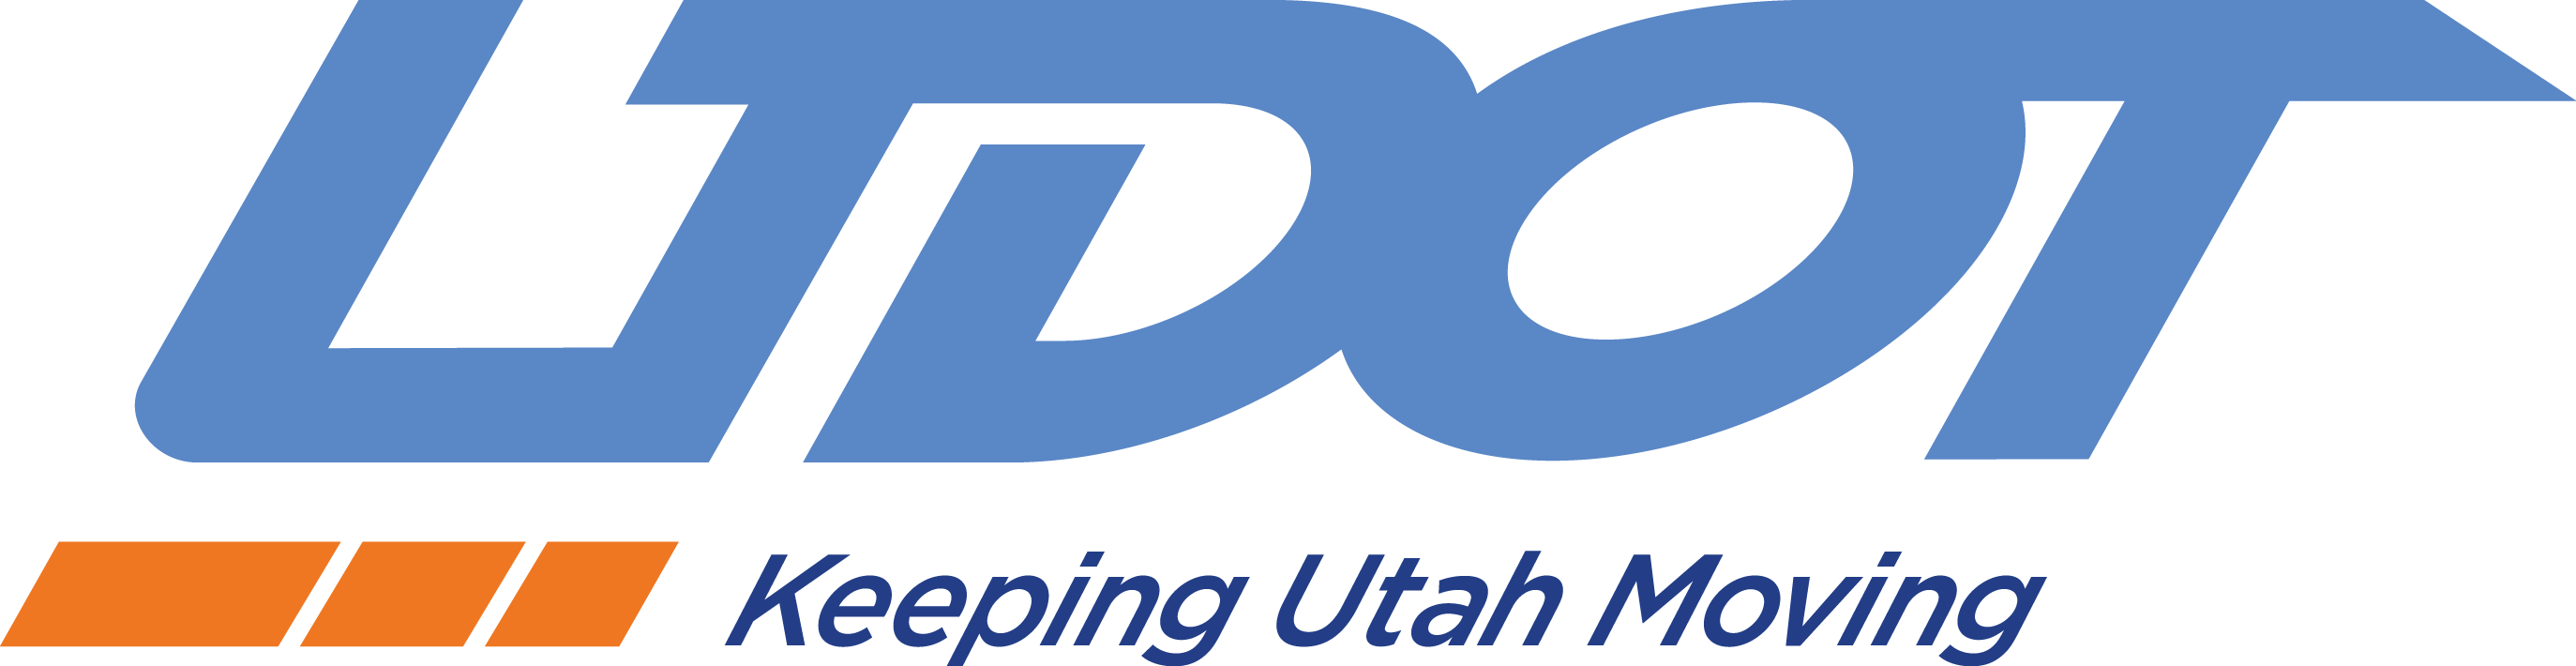 UDOT logo